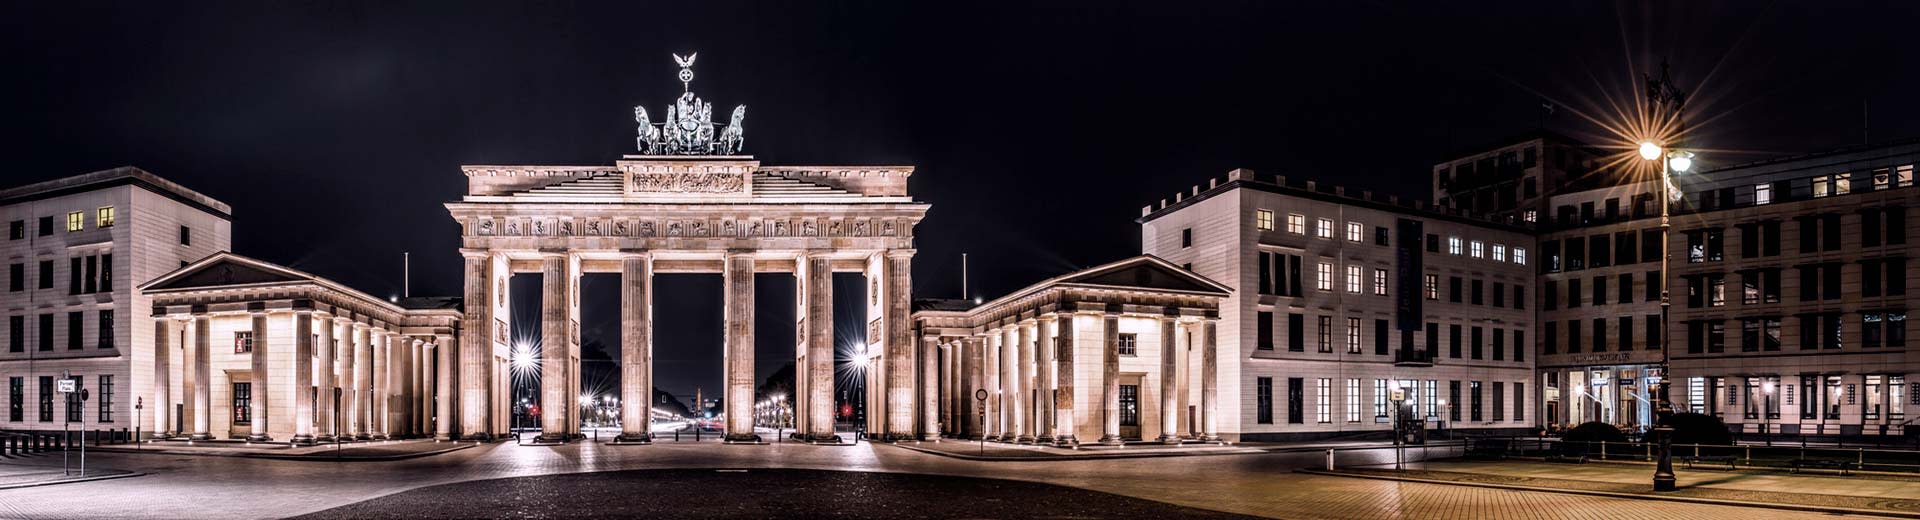 夜幕下的柏林勃兰登堡门，灯光照亮了整个建筑。